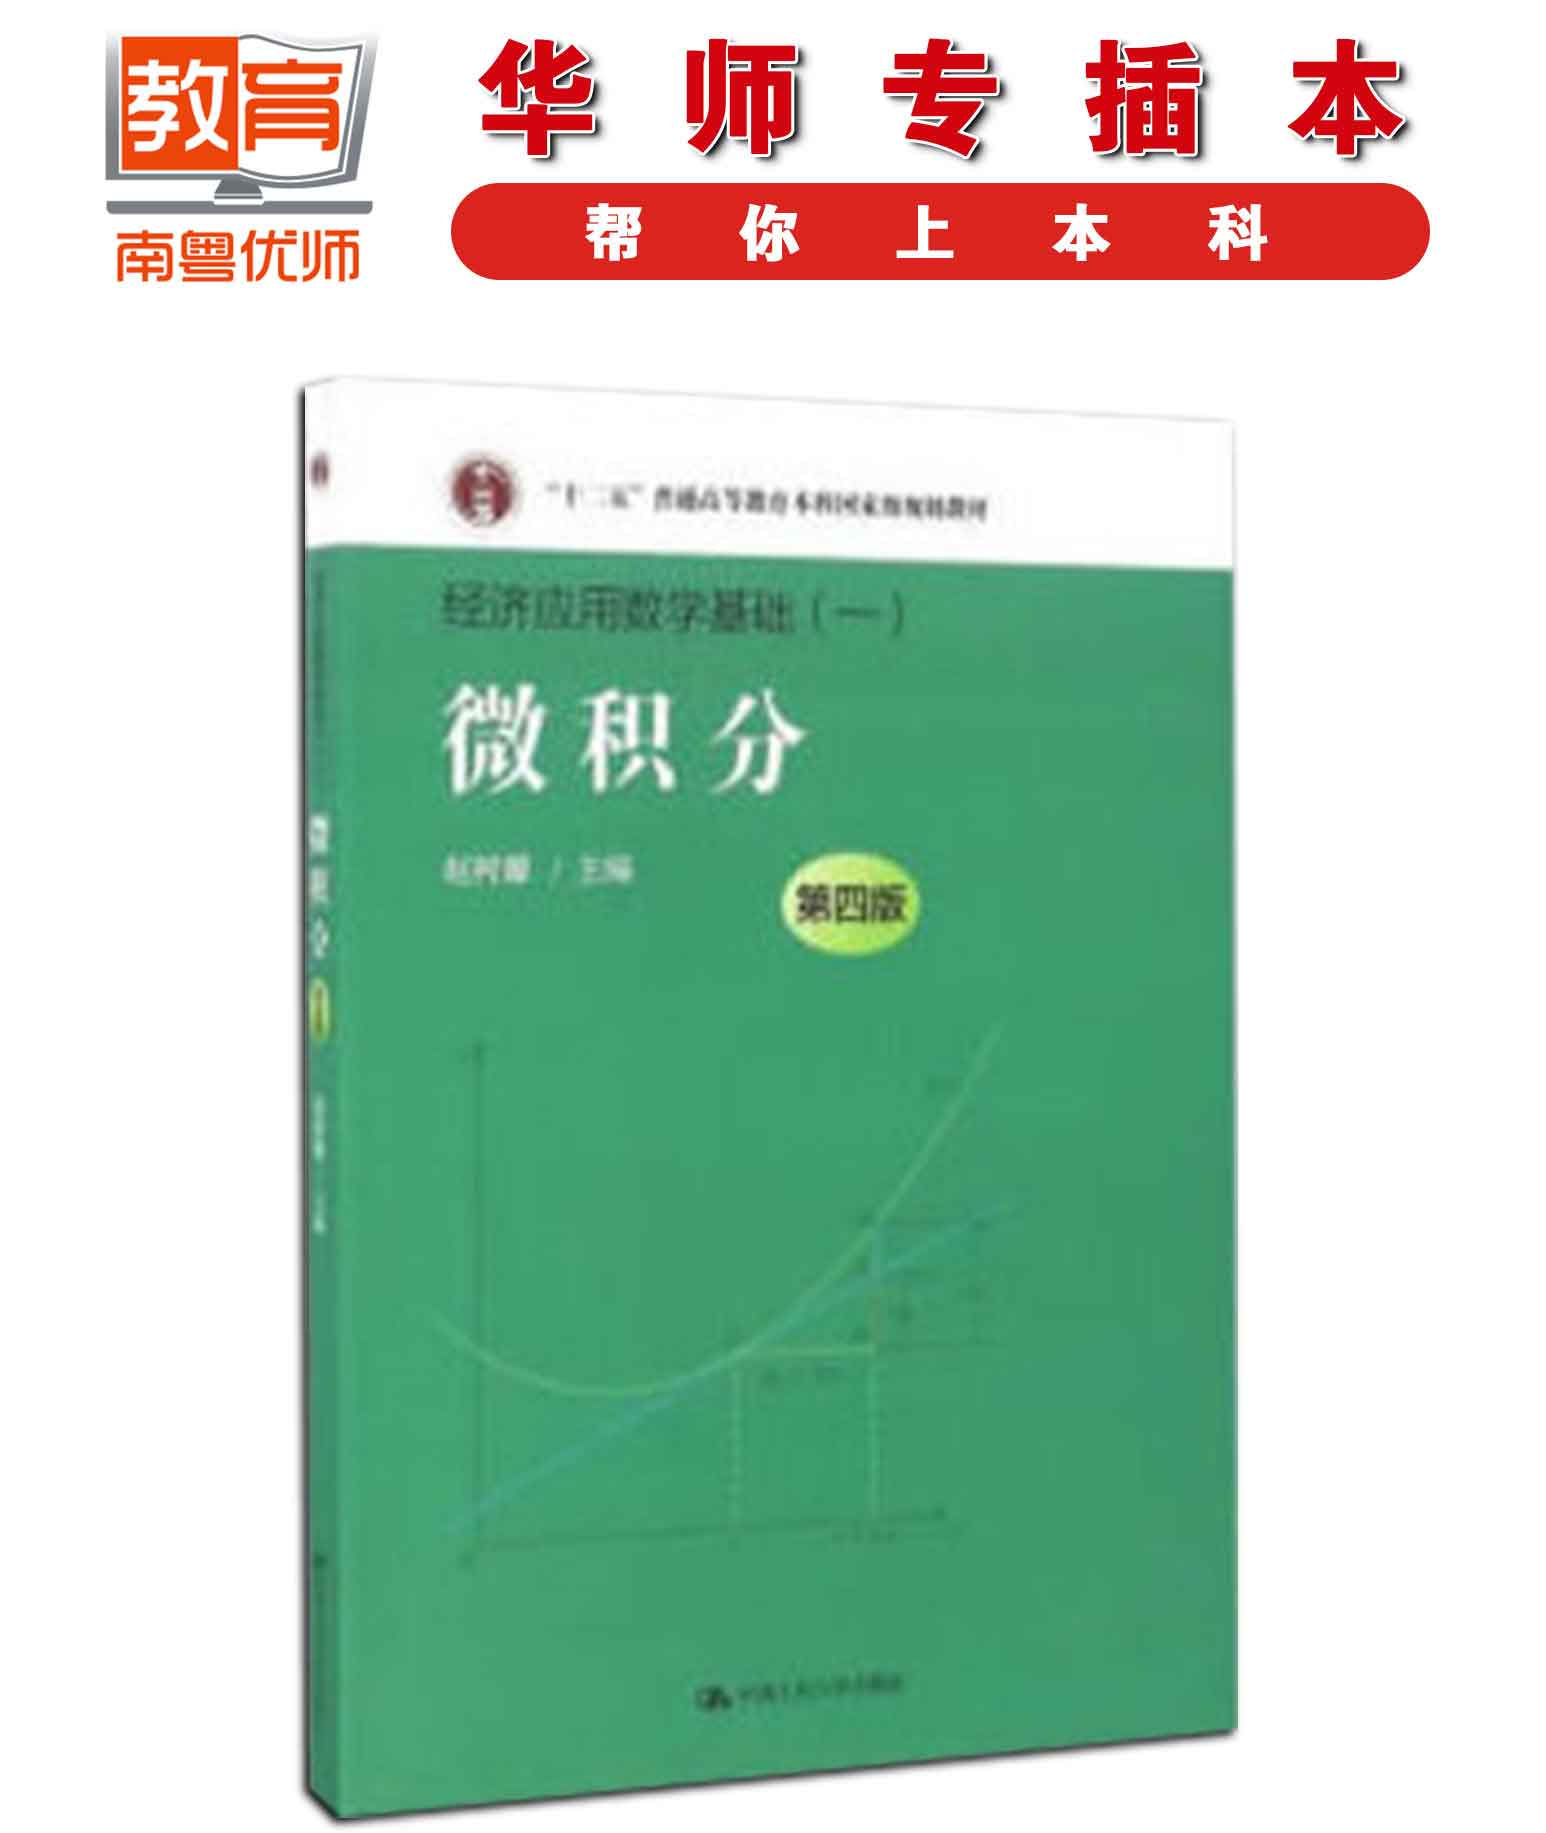 微积分(第四版),赵树嫄,中国人民大学出版社(图1)